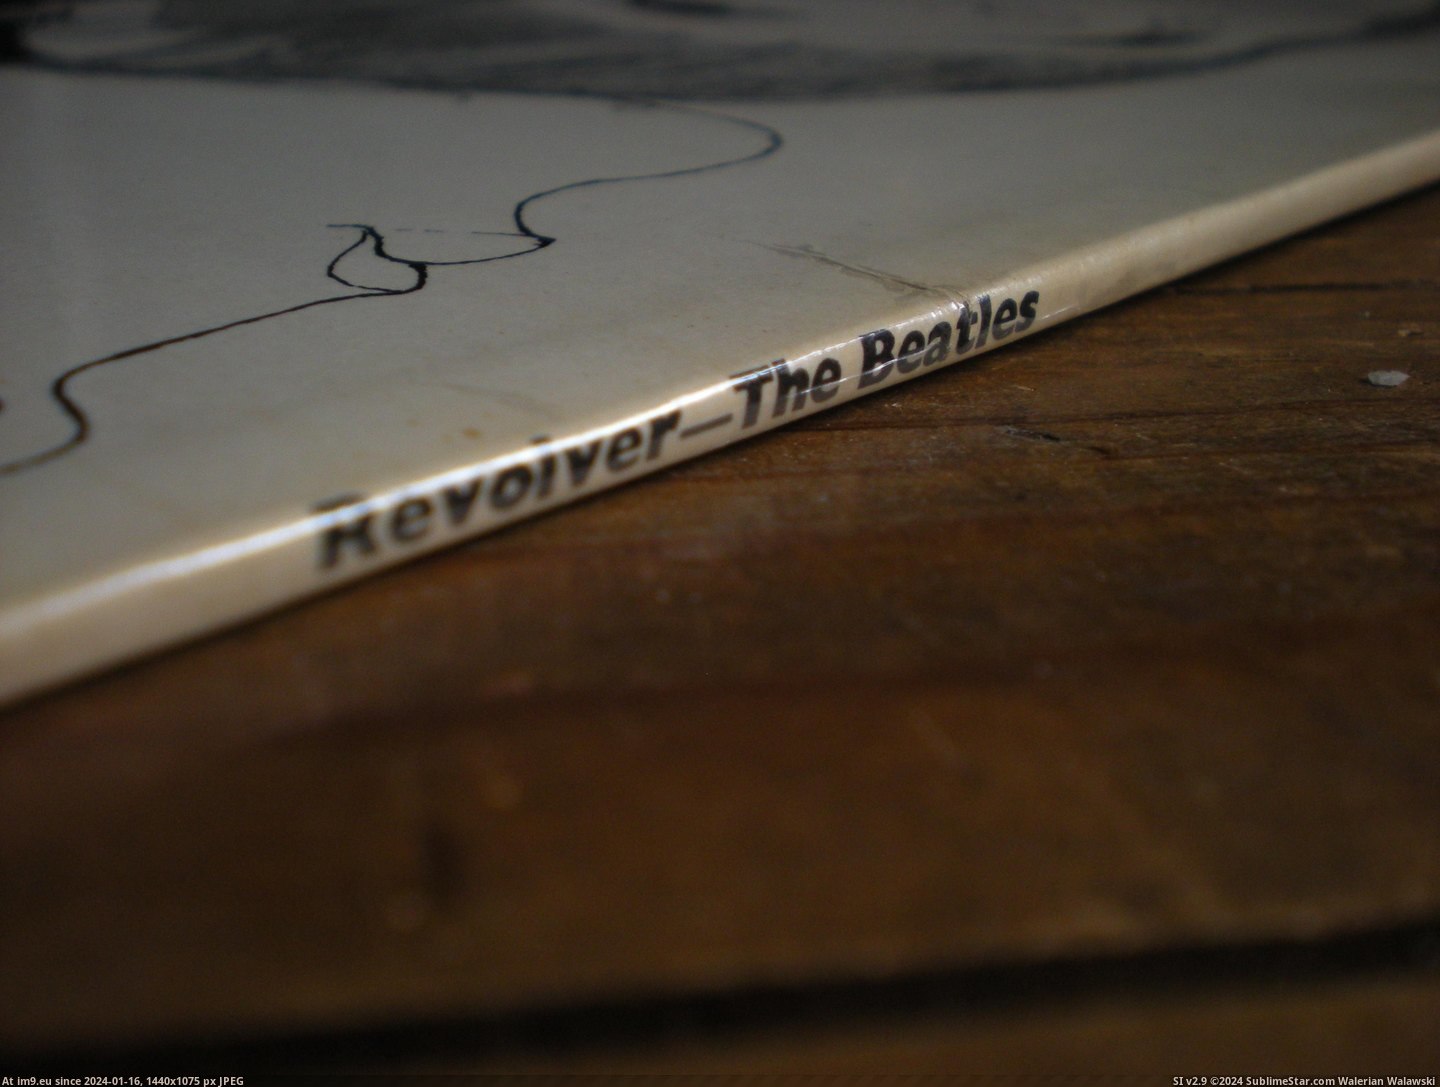  #Revolver  Revolver 15-07-14 4 Pic. (Obraz z album new 1))